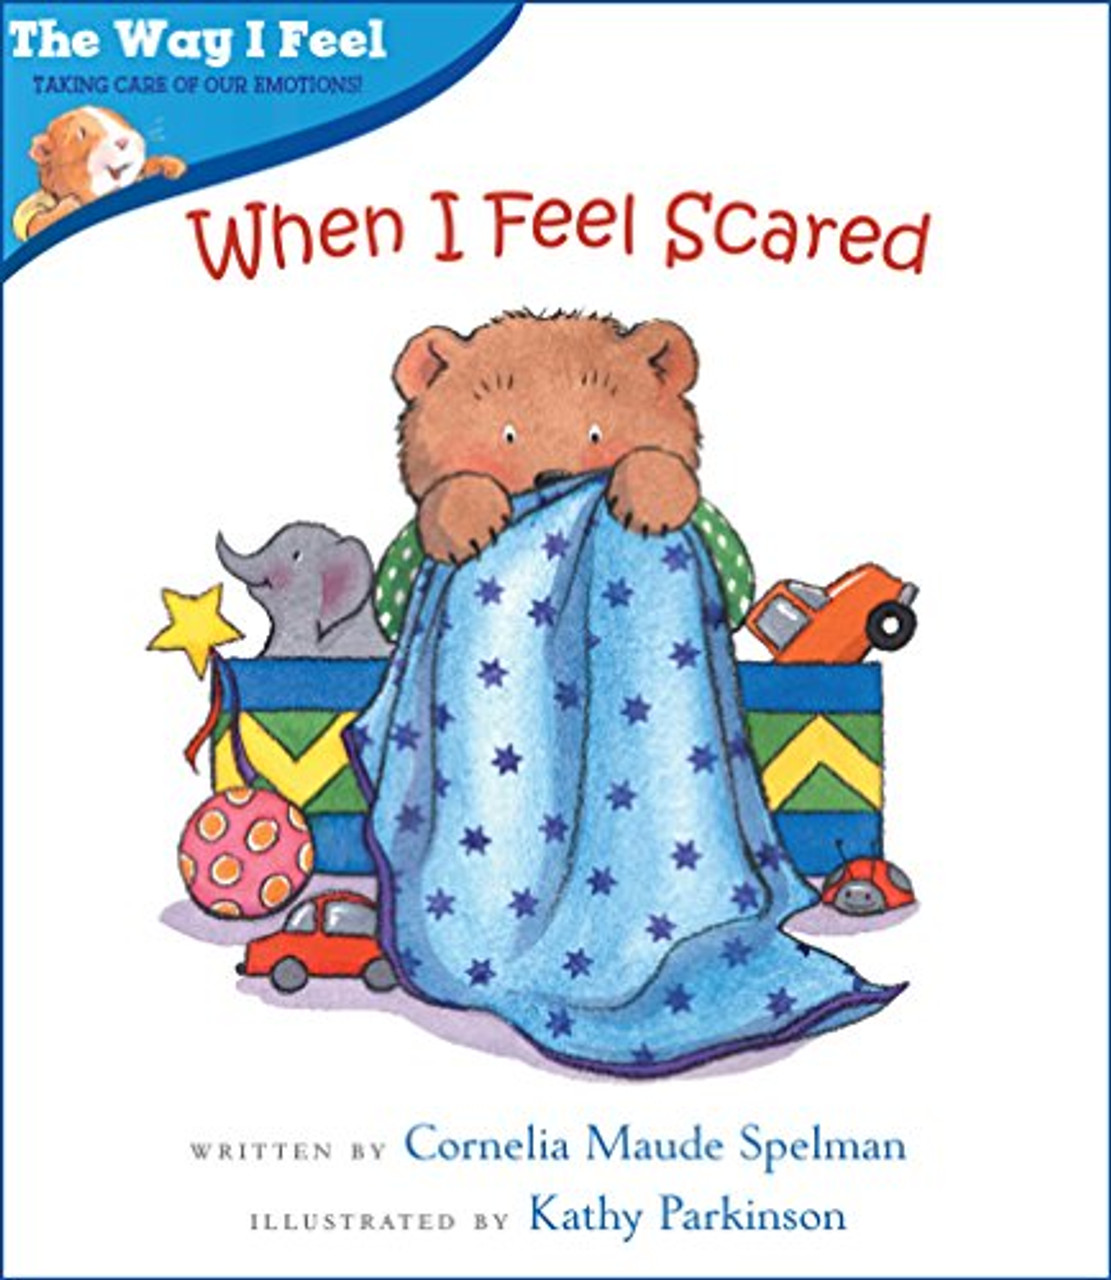 When I Feel Scared by Cornelia Maude Spelman